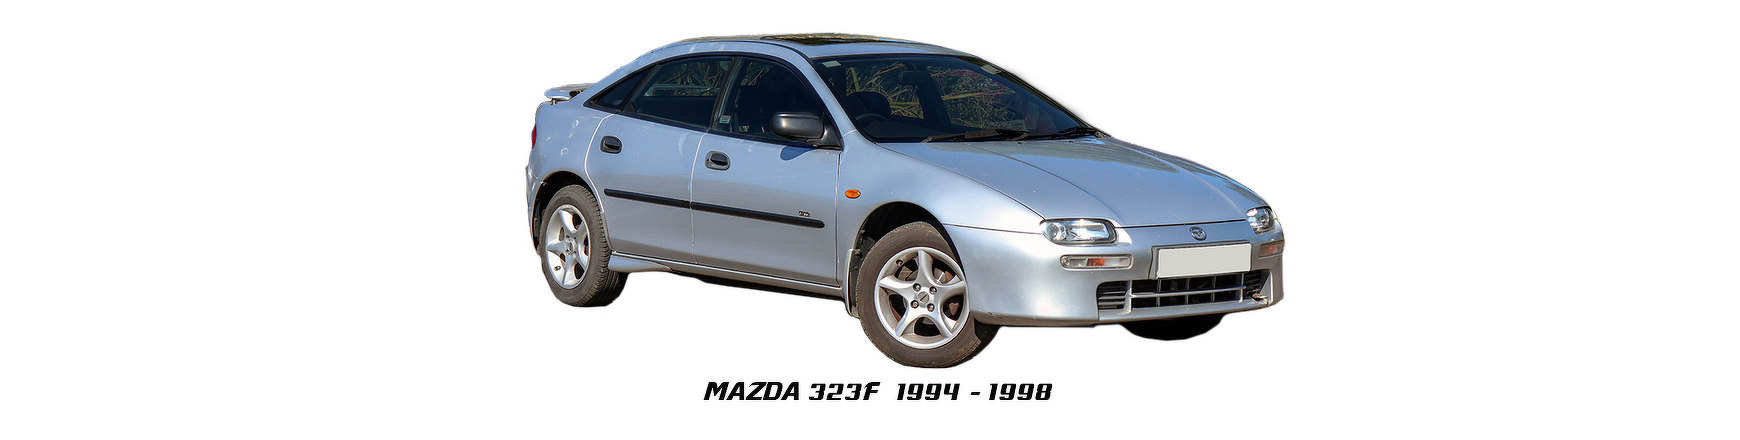 Piezas y Recambios de Mazda 323 F de 1994 a 1998 | Visite Veramauto.es